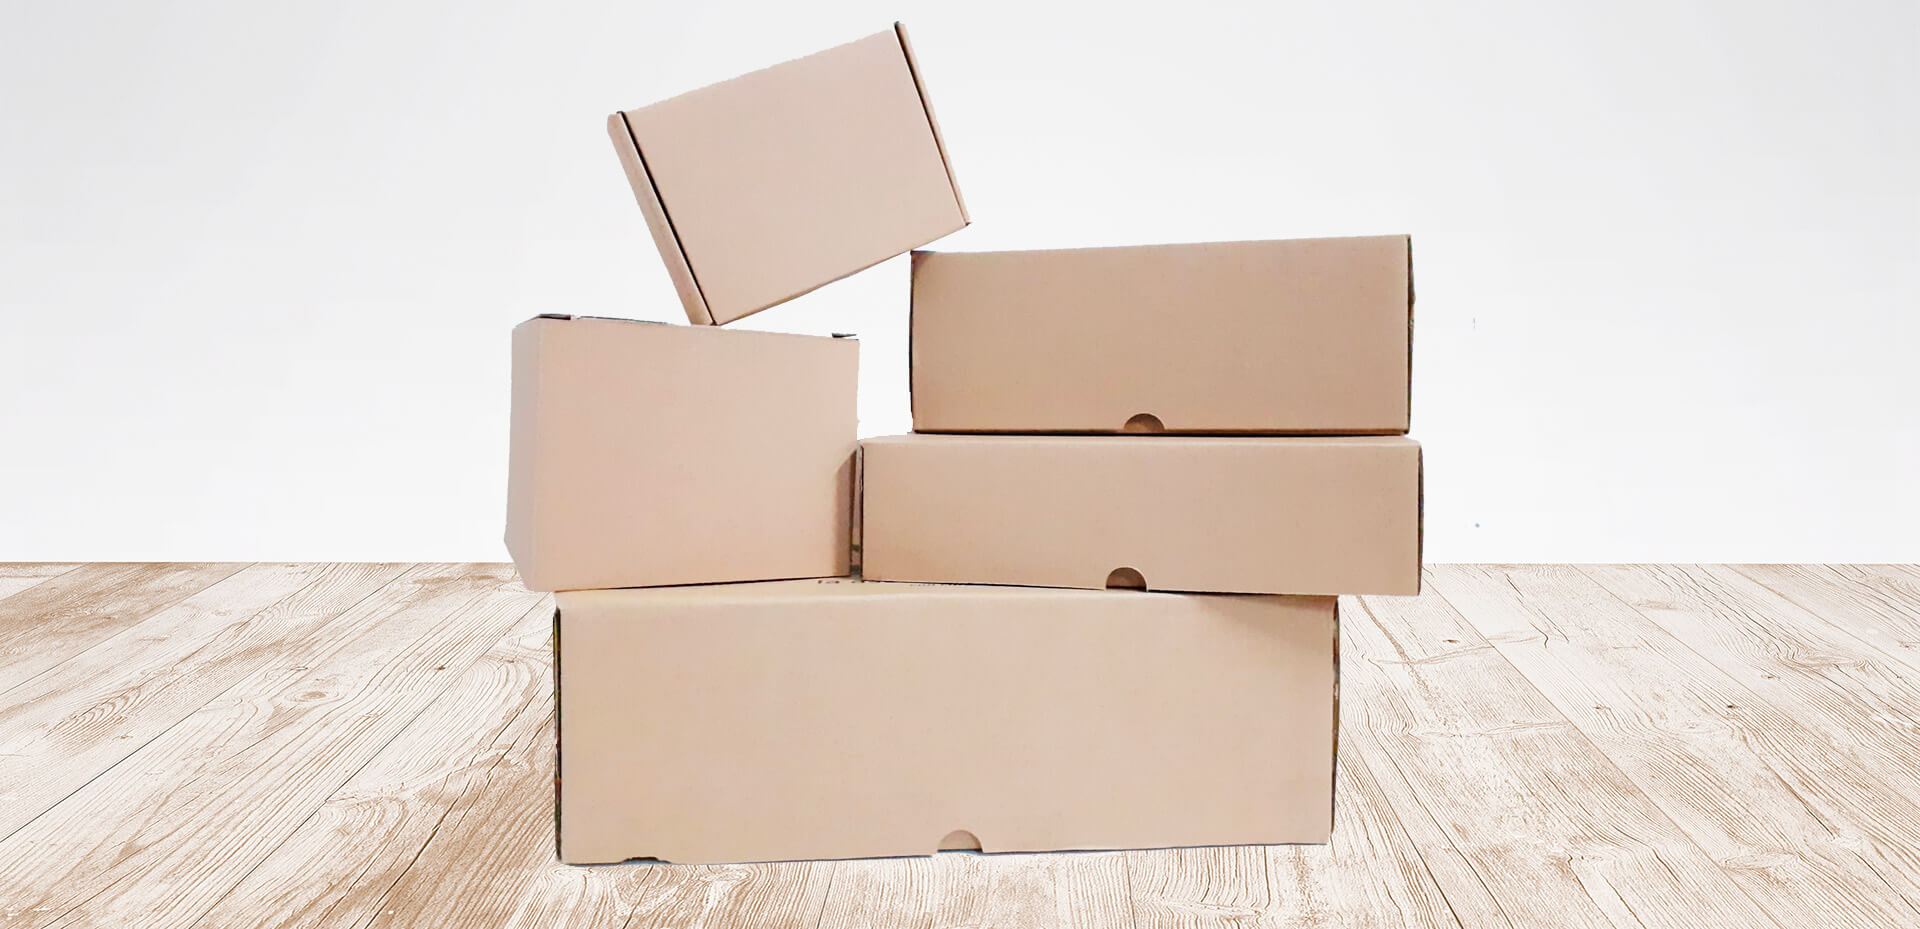 cajas ecommerce cajas para envíos baratas